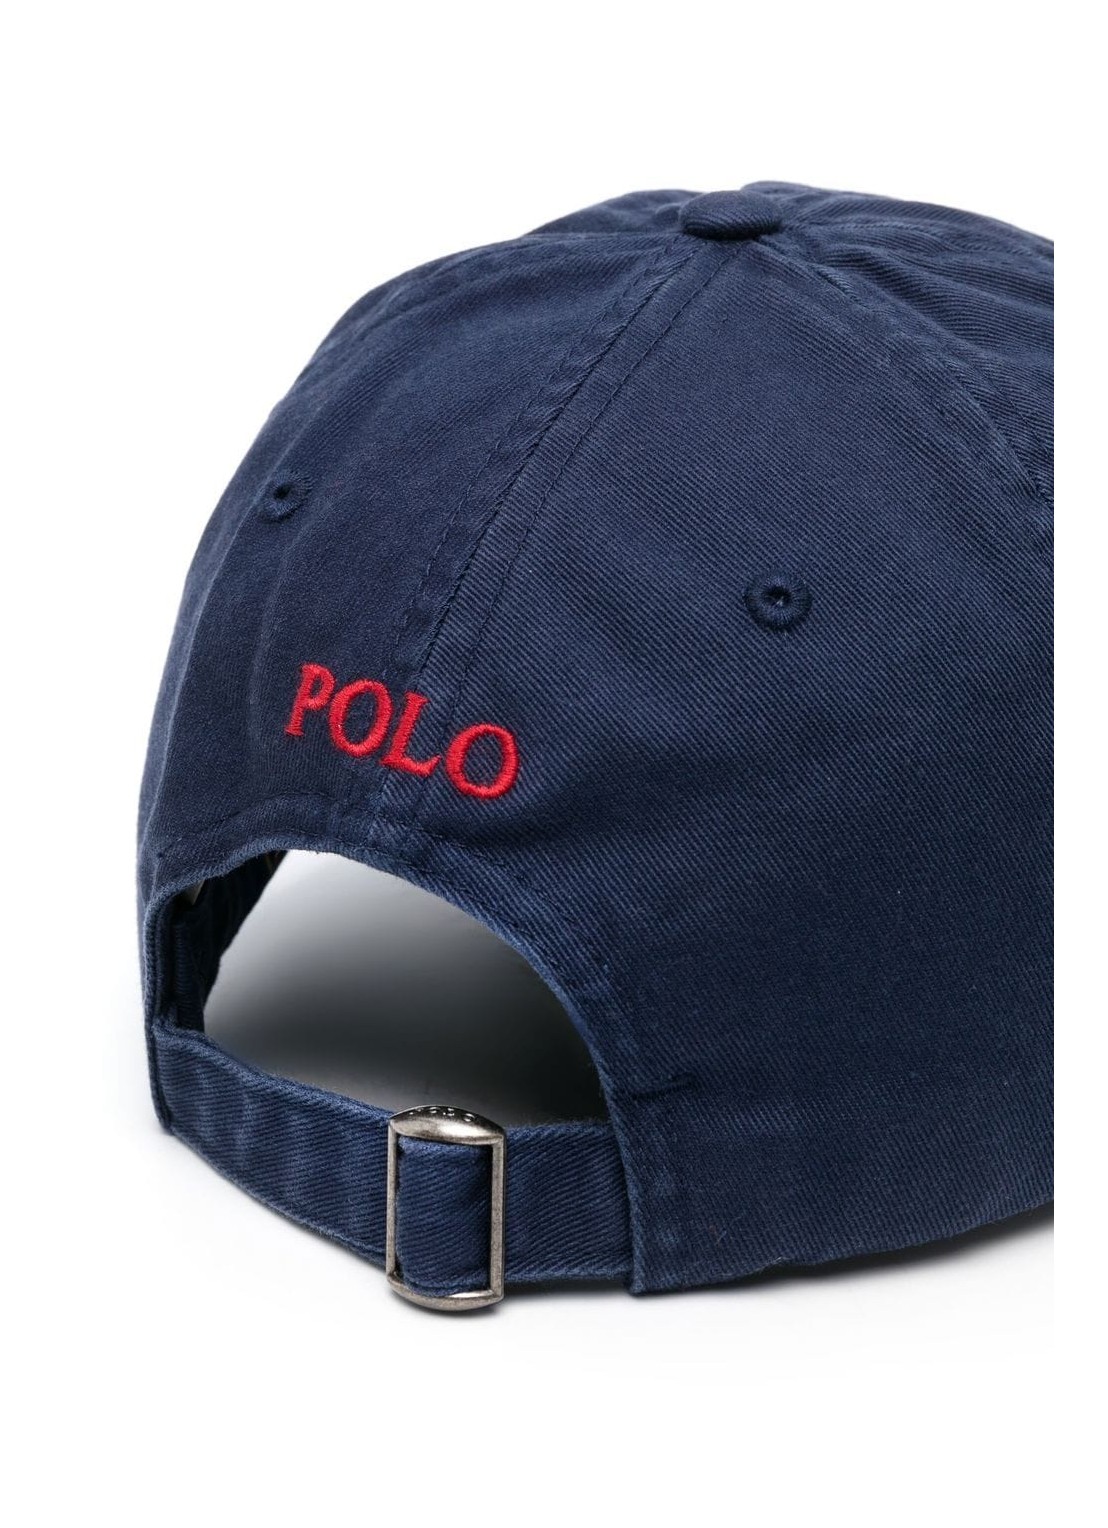 polo ralph lauren sport cap-hat - 710548524014 newport navy rl2000 red ...